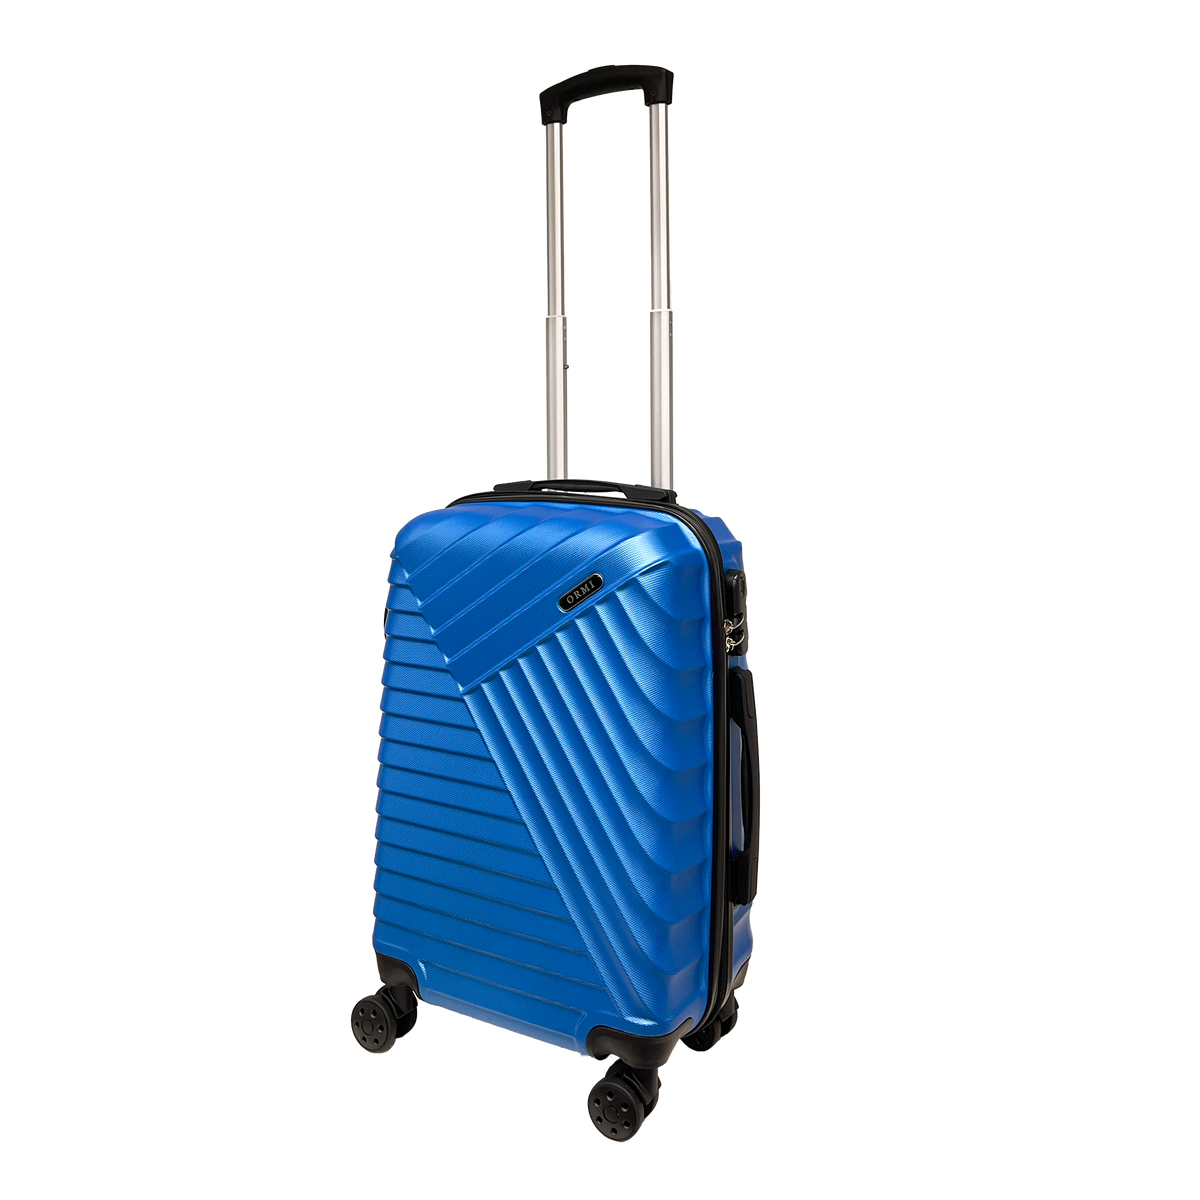 Nagy durva poggyász merev poggyász 55x37x22cm ultrafény az ABS -ben - tartsa meg a poggyászát